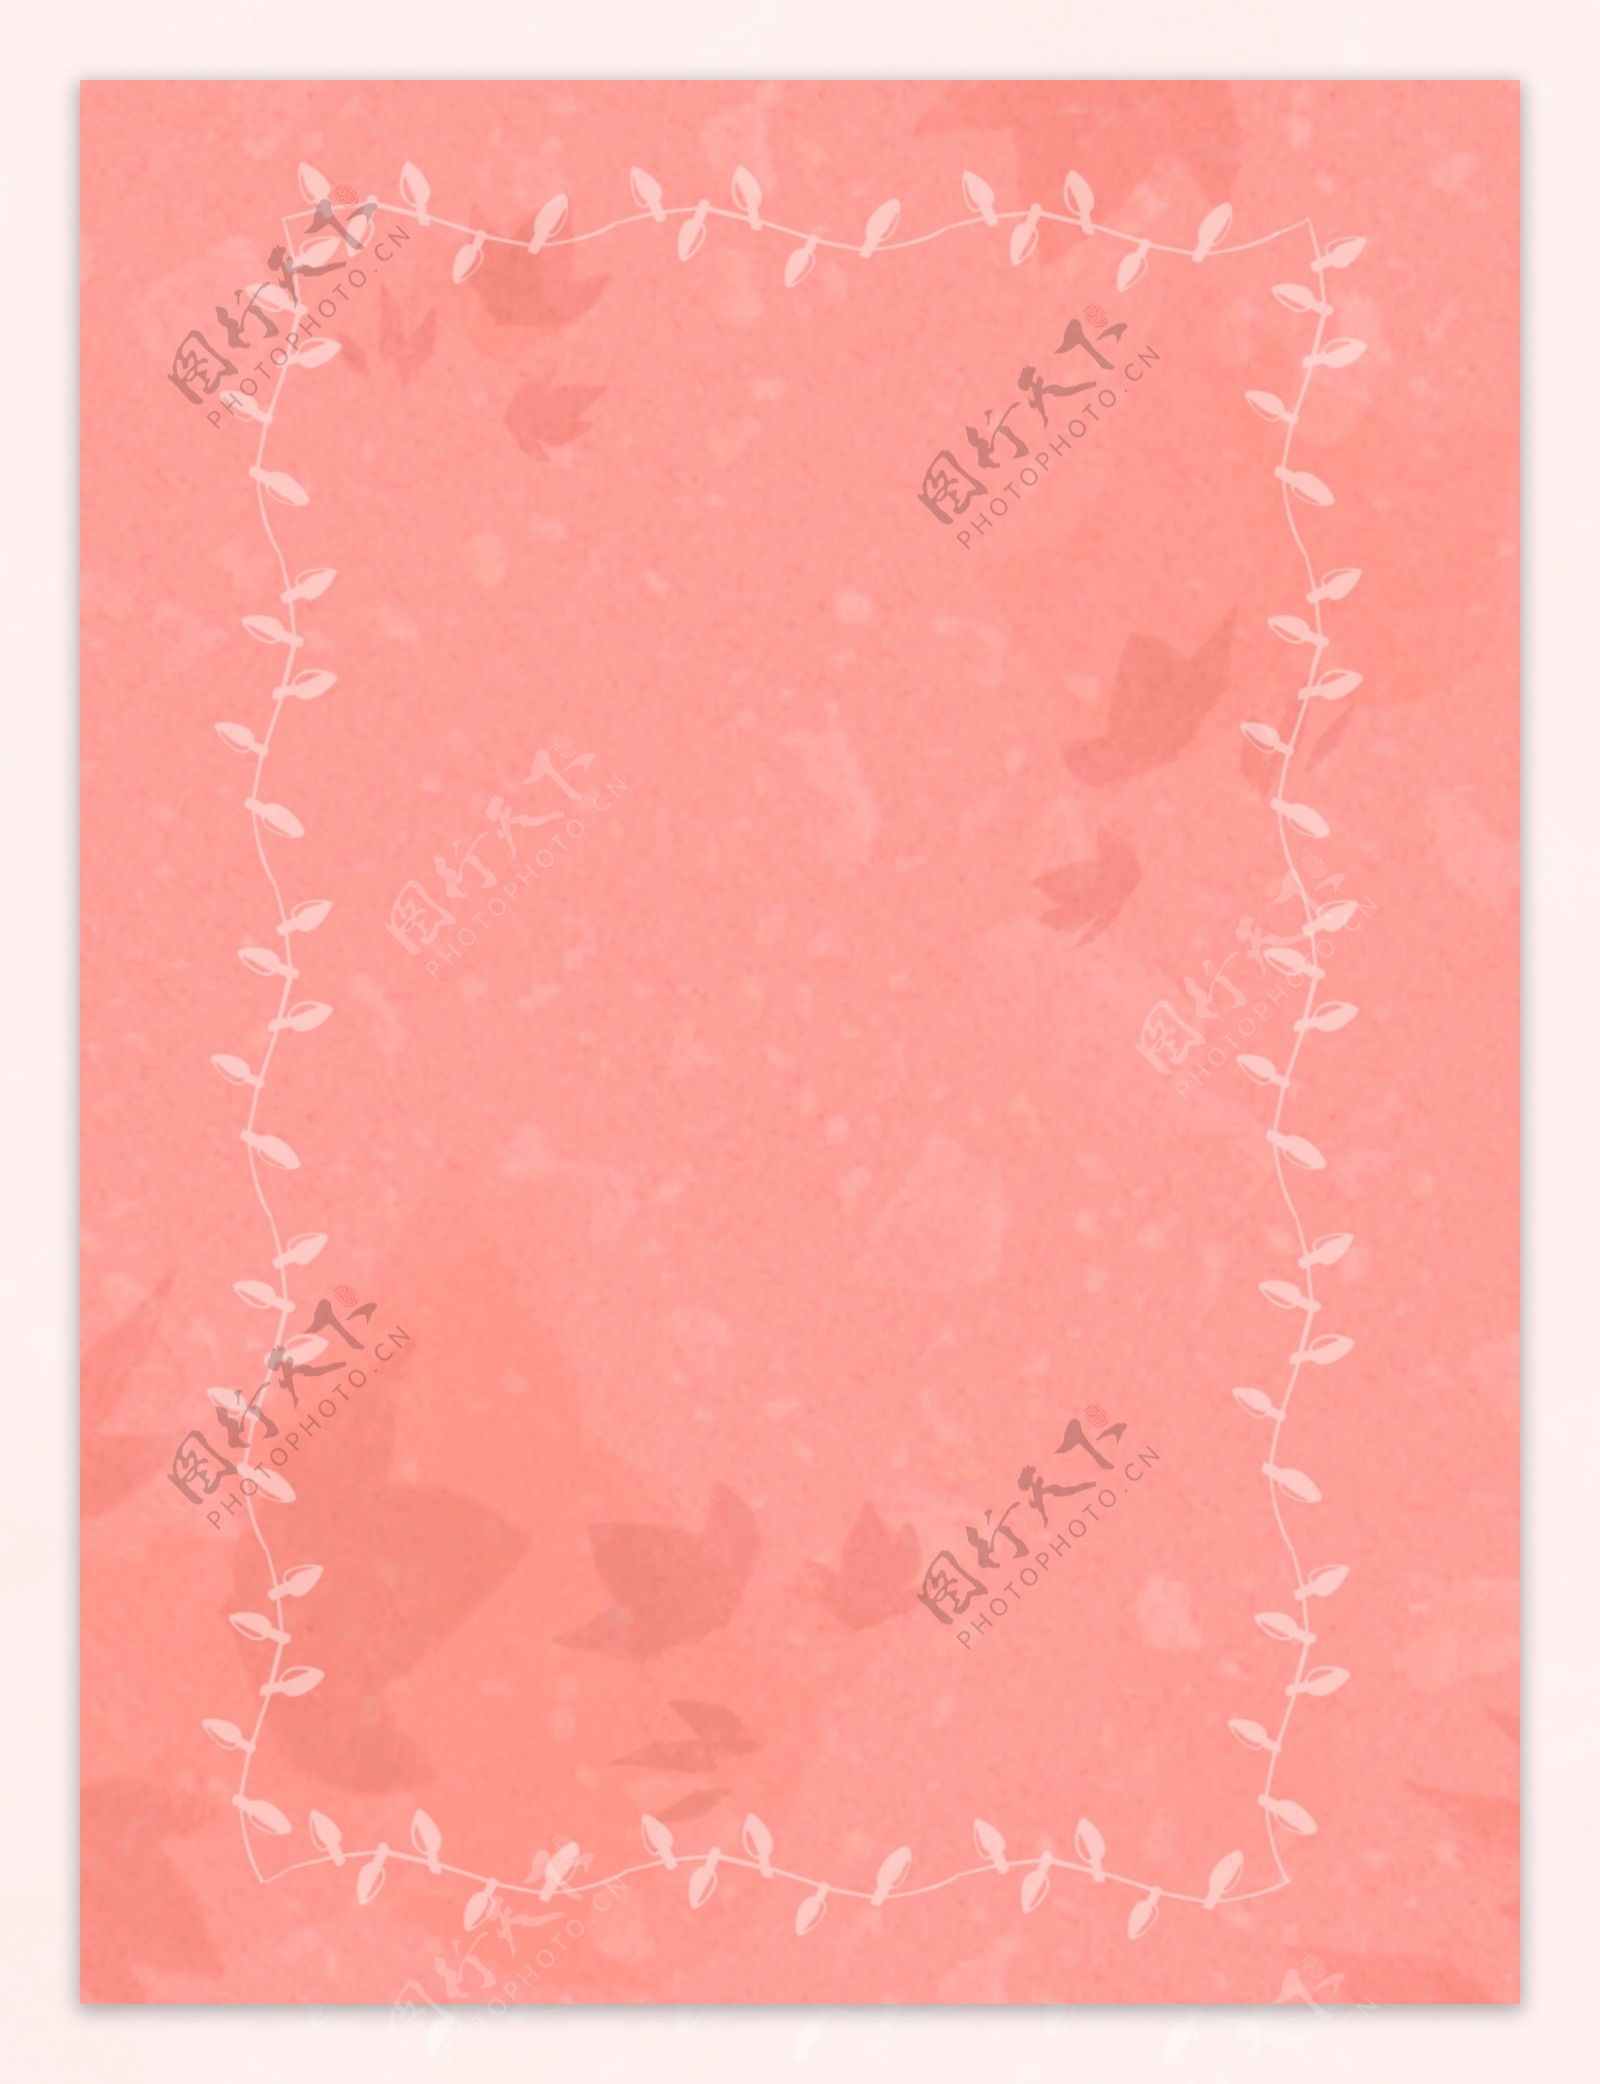 原创小清新粉色信纸质感边框背景